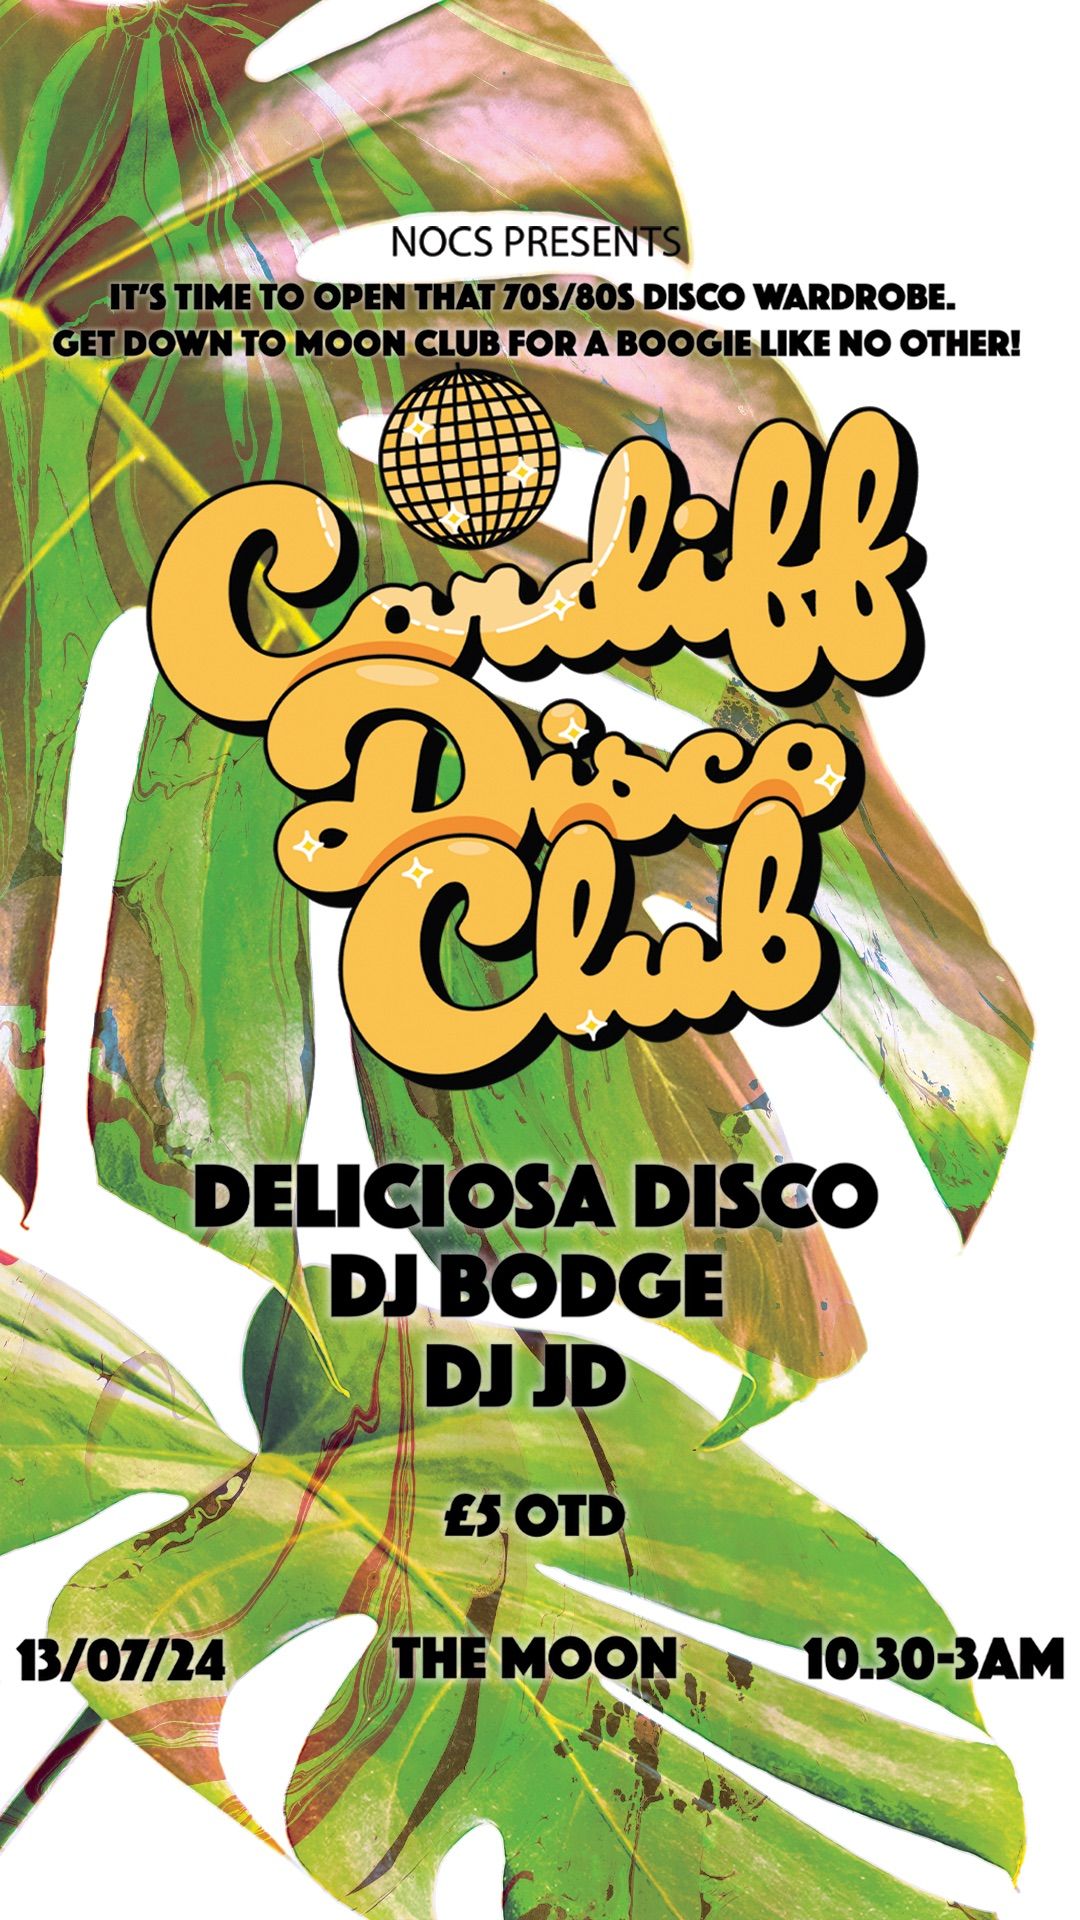 Cardiff Disco Club